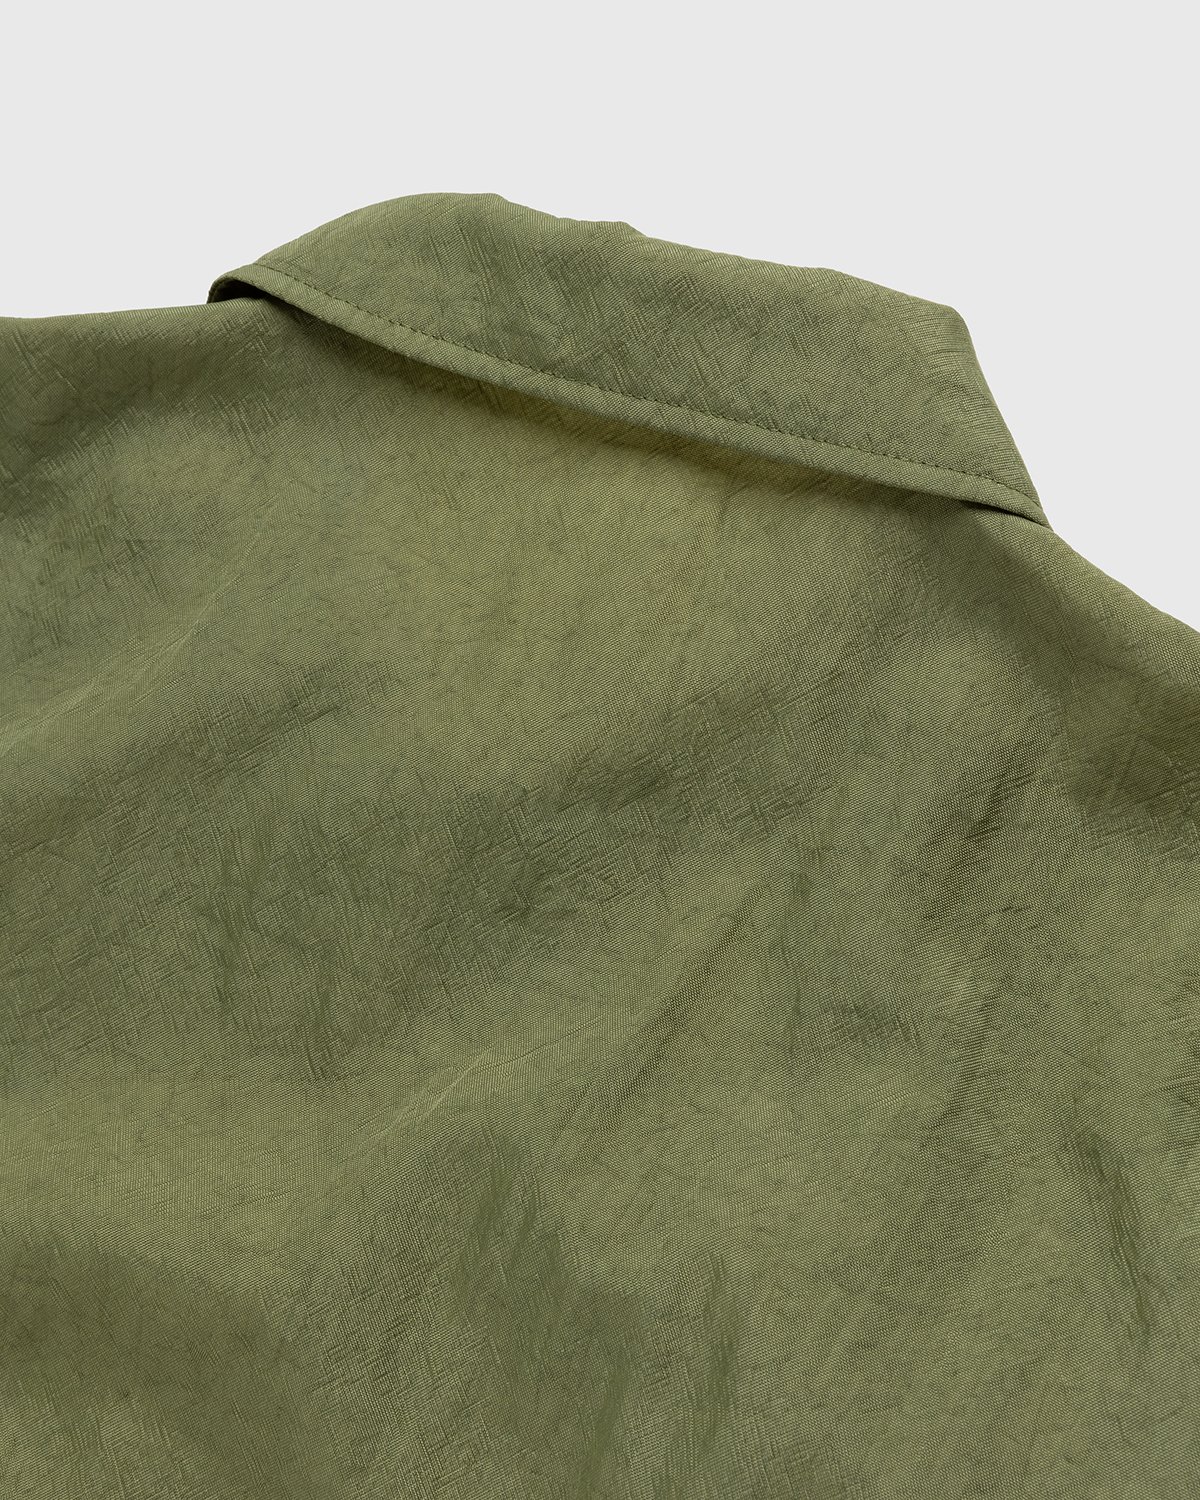 Highsnobiety - Stonewashed Nylon Coach Jacket Olive - Clothing - Green - Image 3